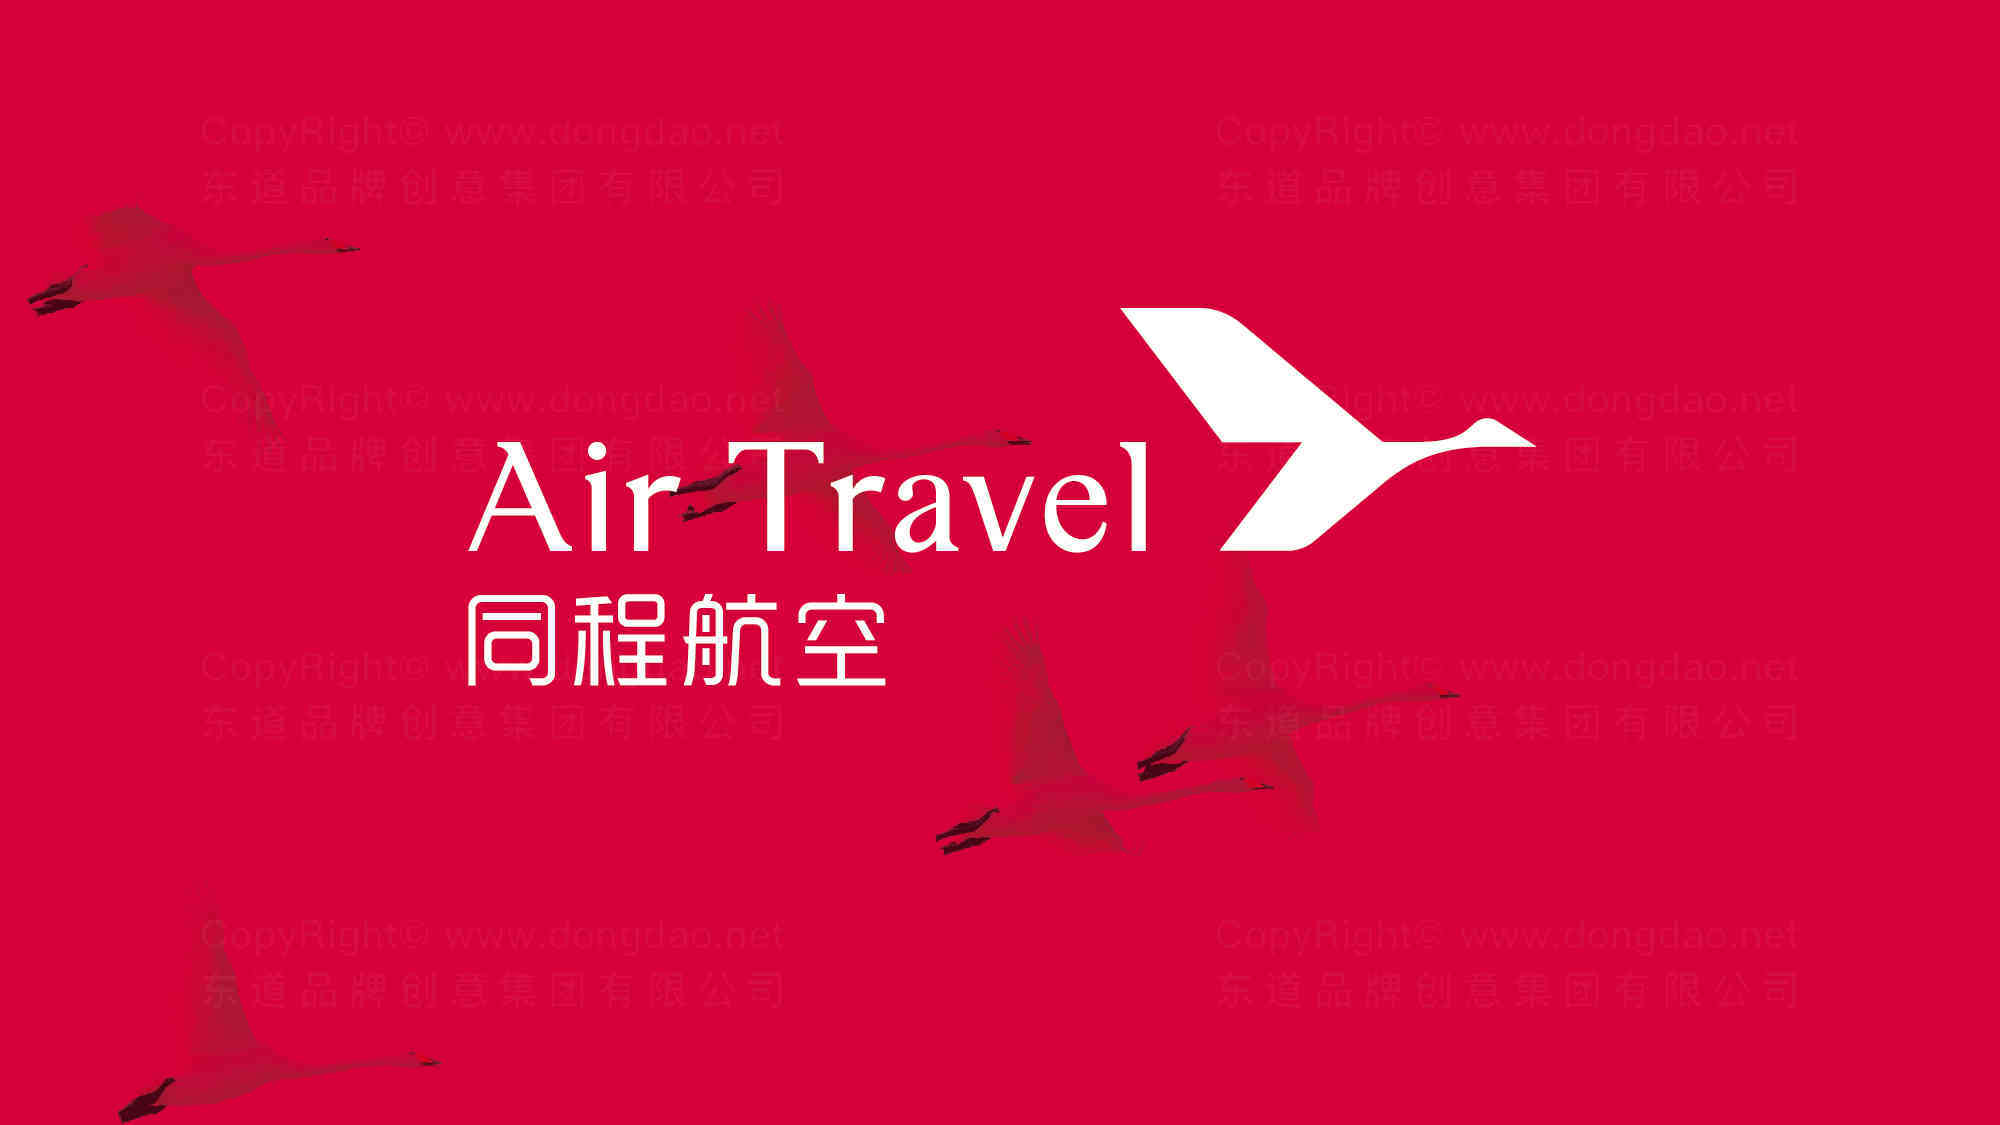 同程航空公司logo设计图片_同程航空航空公司logo设计图片素材